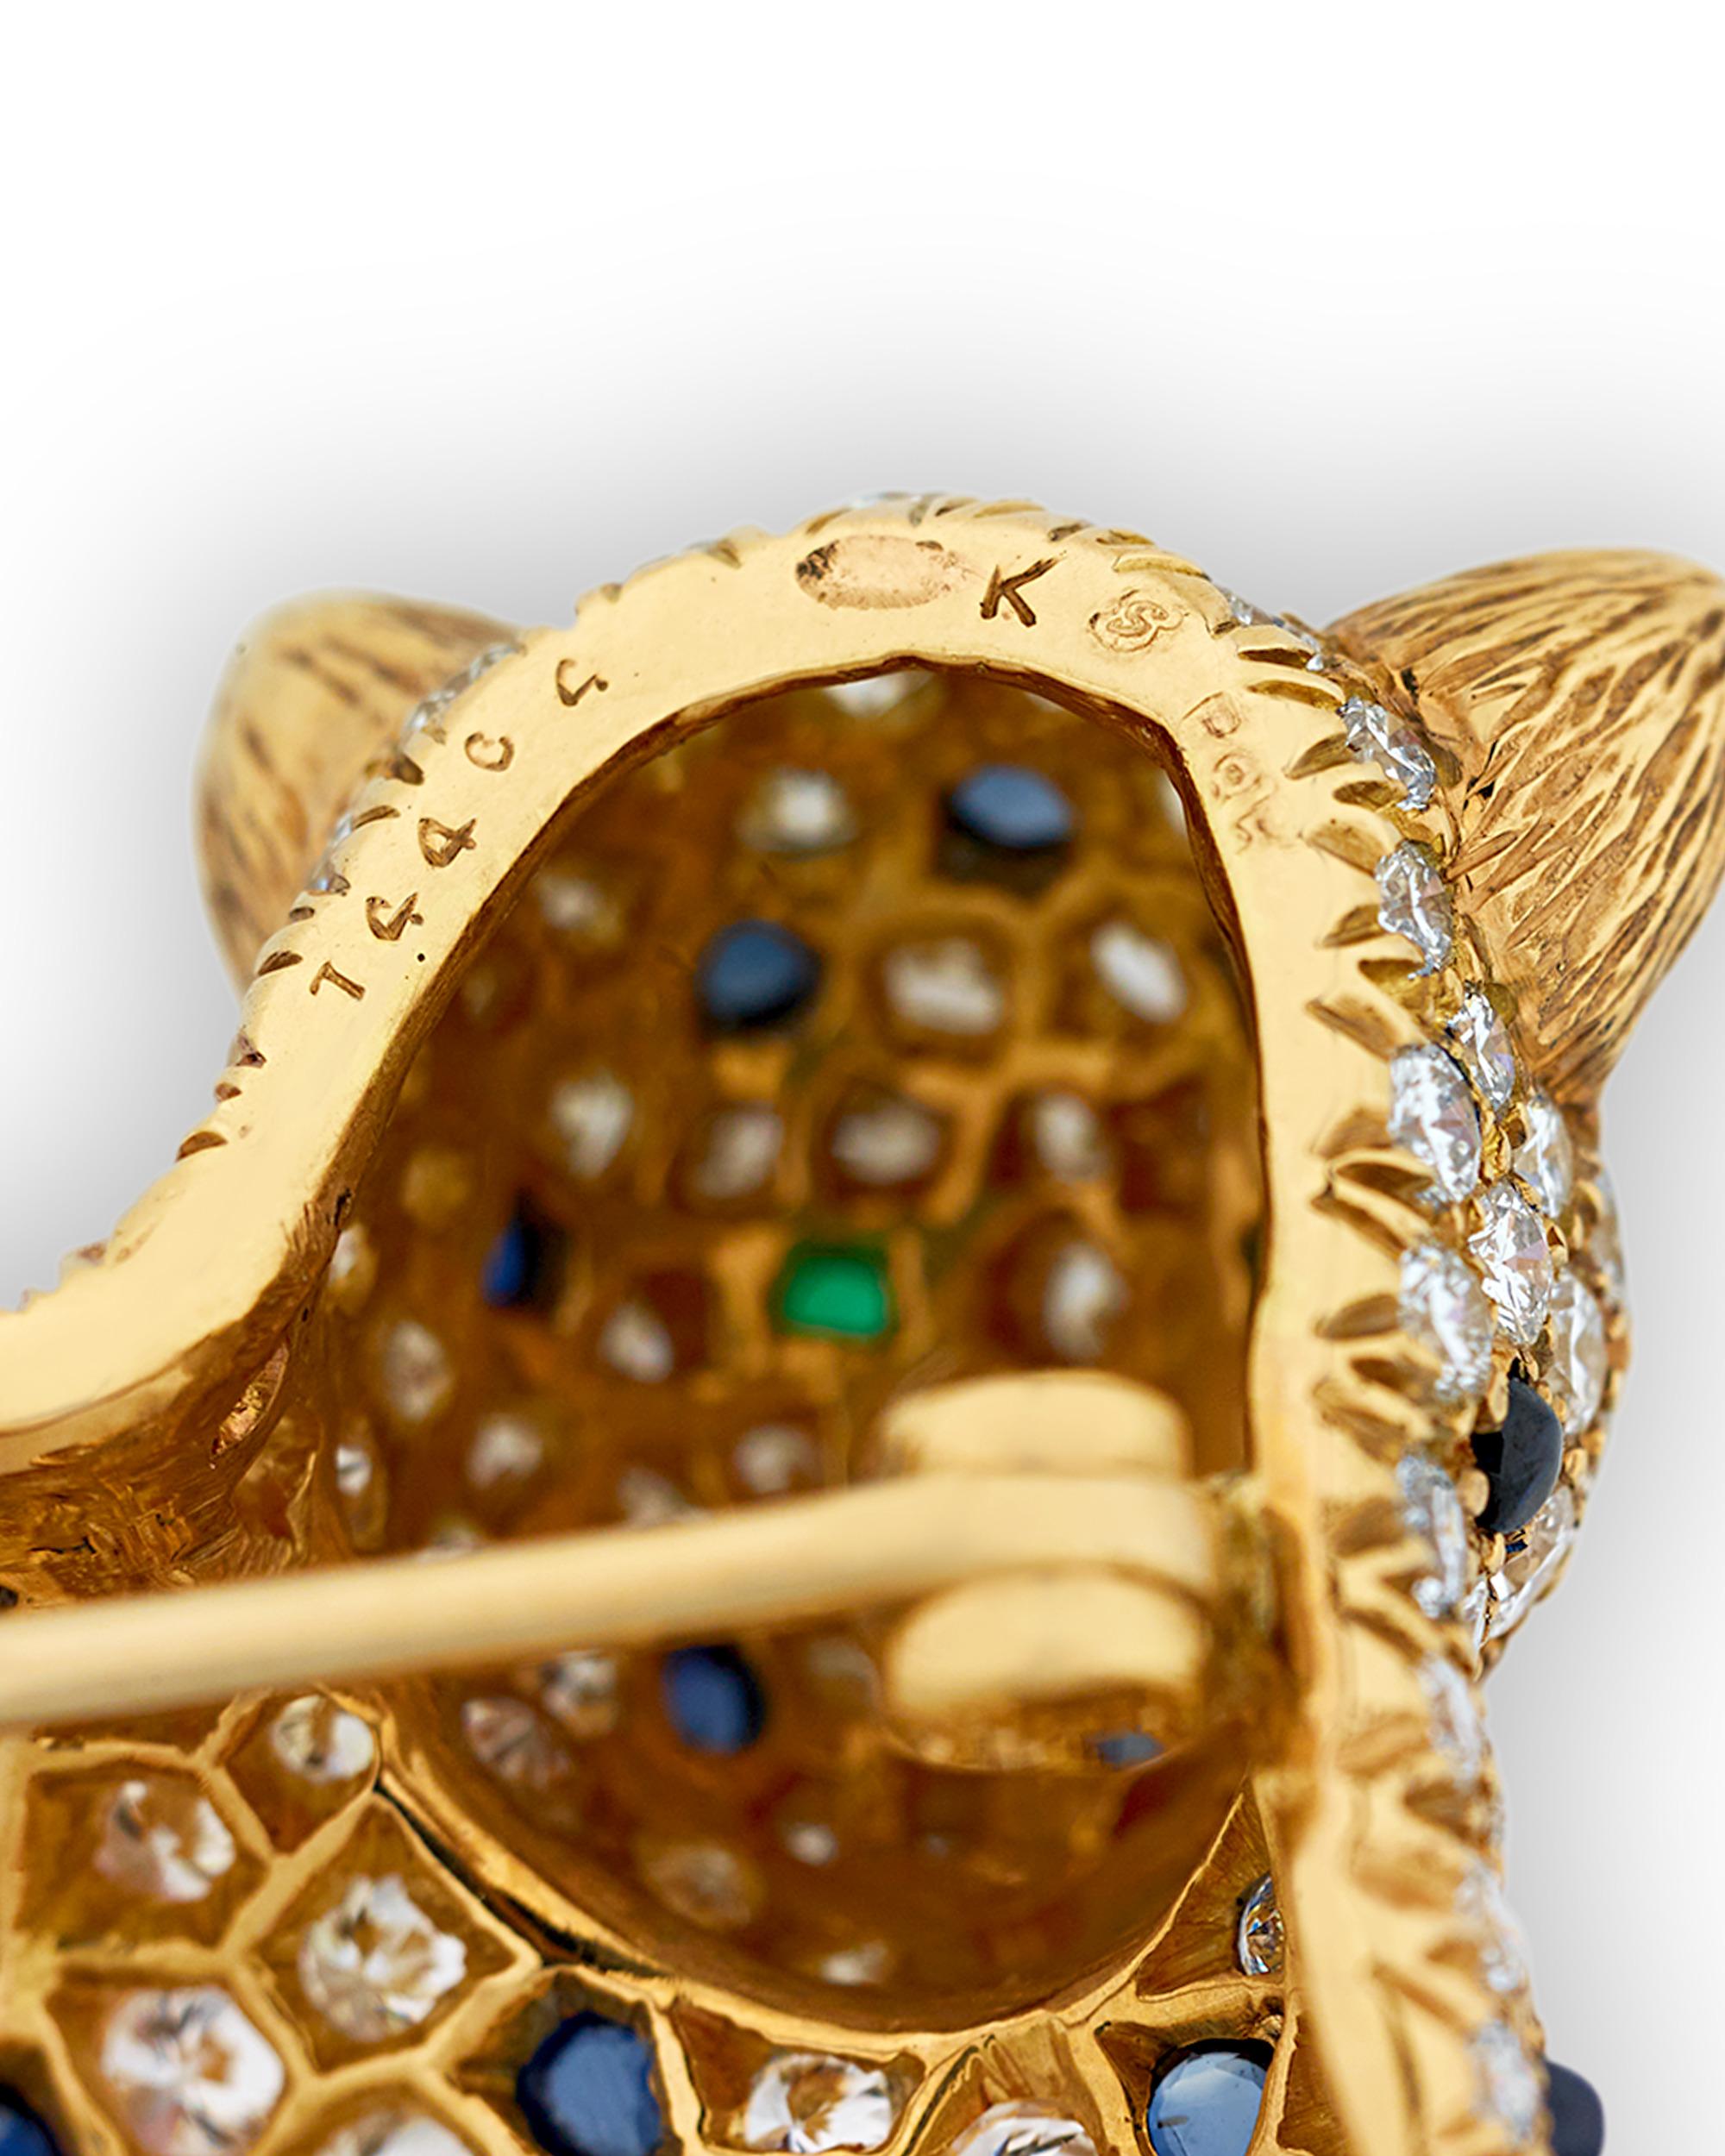 Ronronnant avec fierté, cette magnifique broche incrustée de bijoux du célèbre joaillier Oscar Heyman prend la forme d'une panthère alanguie au repos. Composé de diamants blancs étincelants totalisant un impressionnant 8,50 carats, le joaillier